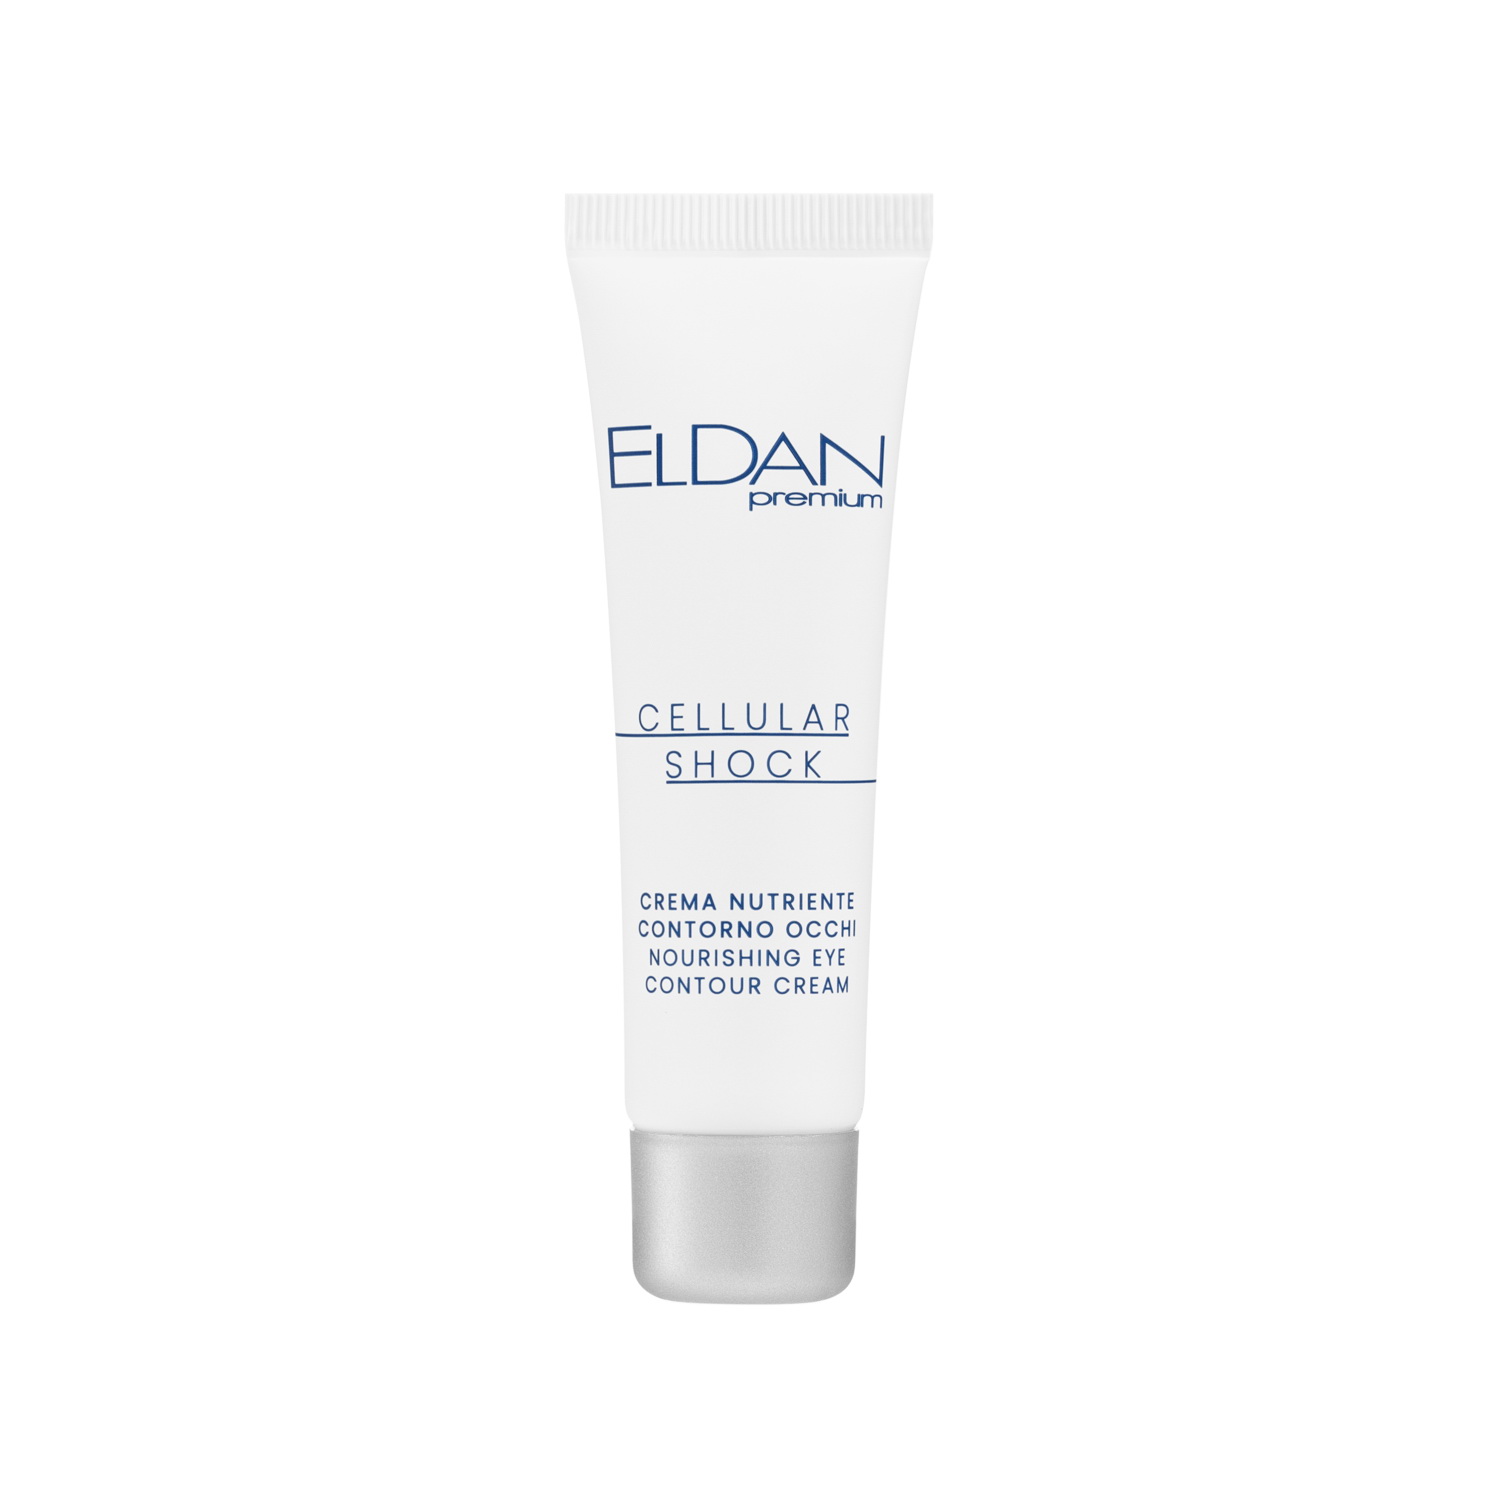 Крем для глаз ELDAN Cosmetics Premium Cellular Shock для увлажнения и питания, 30 мл eldan сыворотка premium cellular shock 30 мл